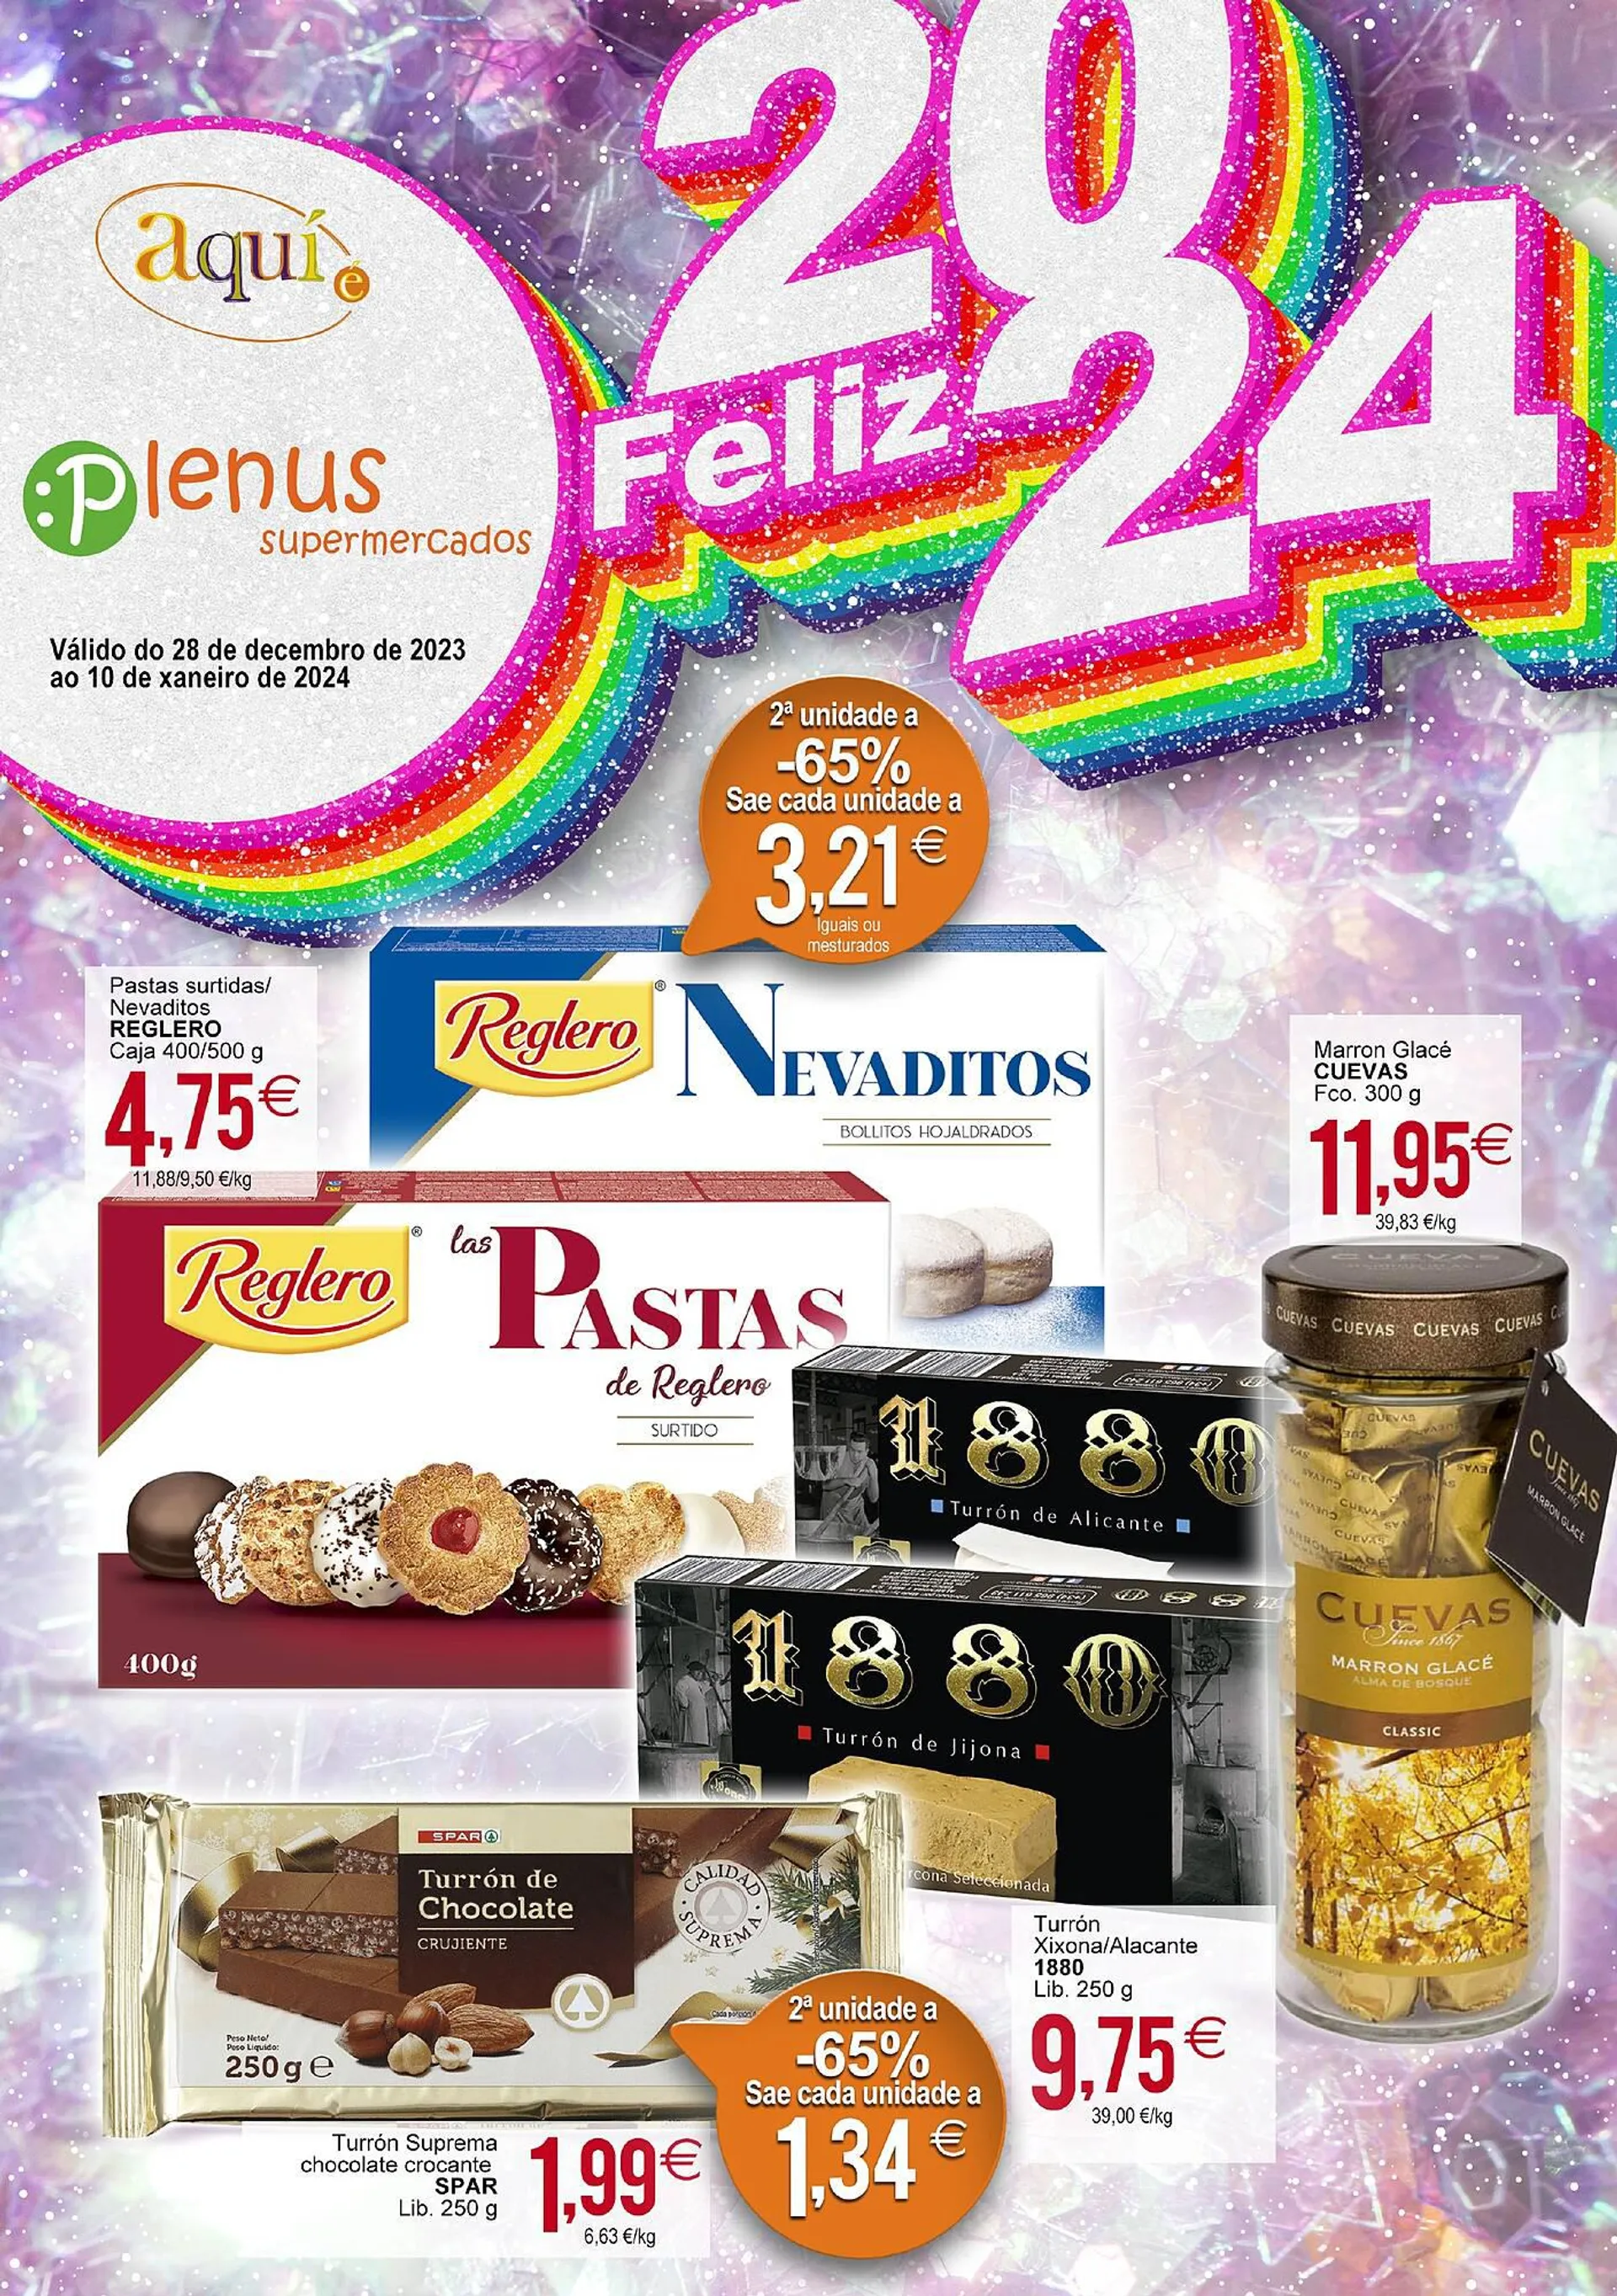 Catálogo de Folleto Plenus Supermercados 28 de diciembre al 10 de enero 2024 - Página 